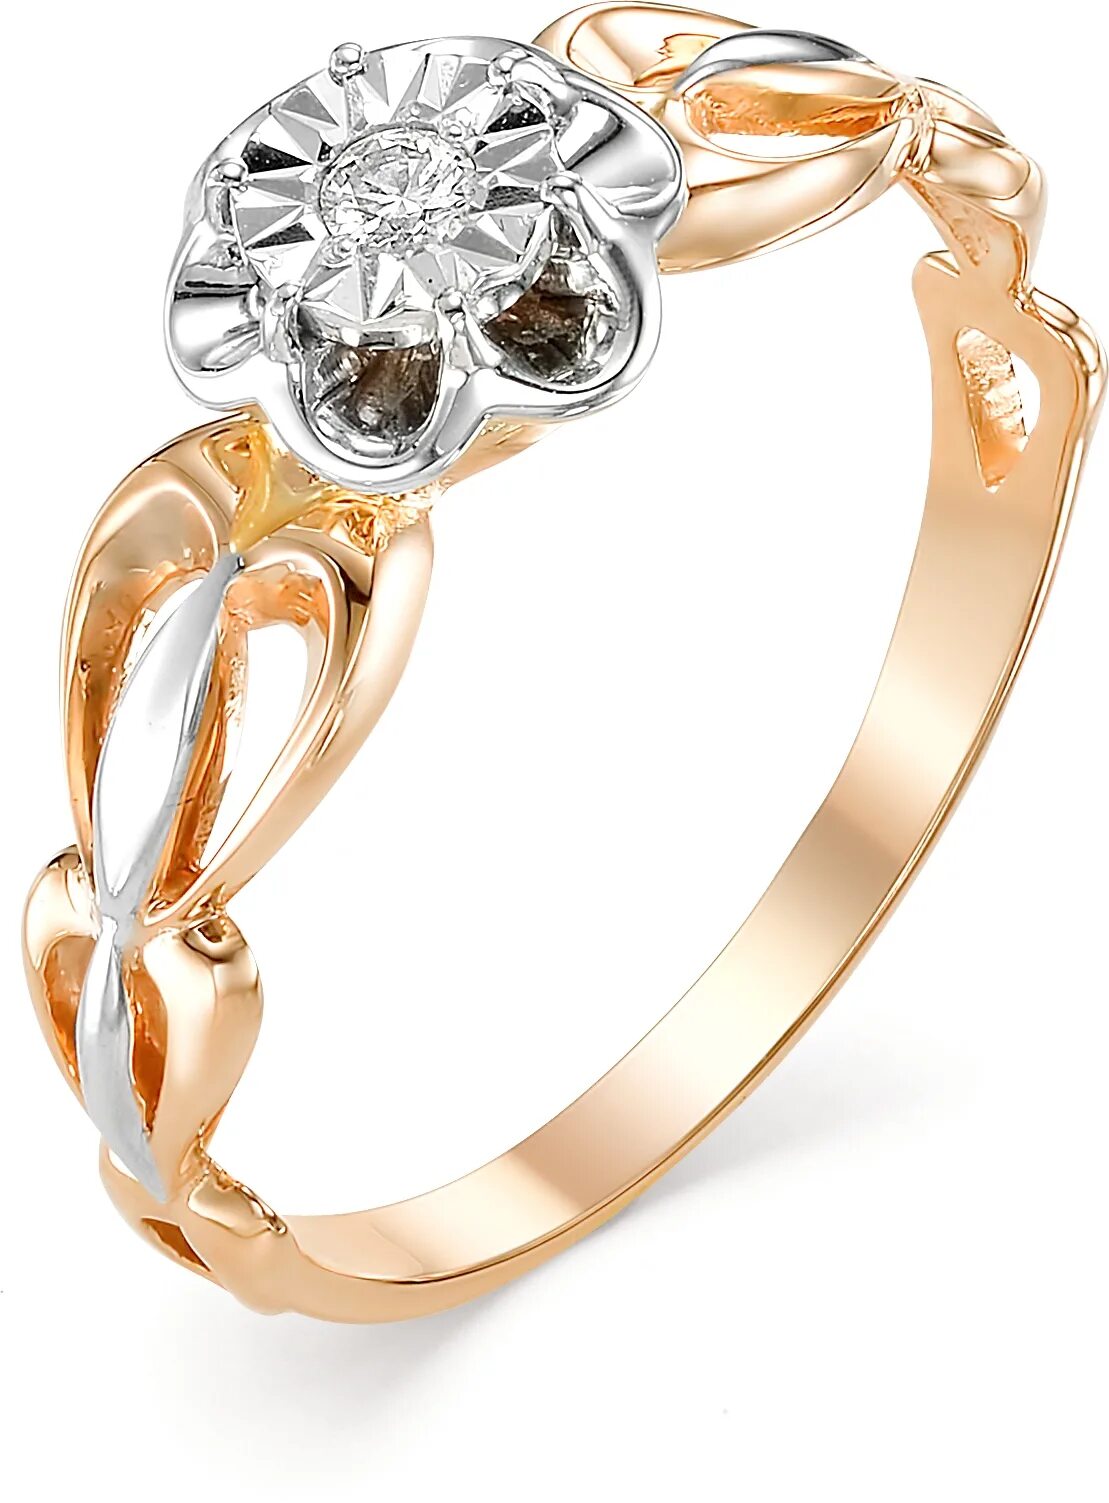 Завод ювелирных изделий бронницы. Золото Алькор кольцо с бриллиантом. Золотое кольцо Алькор с бриллиантом. Золотое кольцо Алькор 11909-100 c бриллиантом. Кольцо красное золото Алькор.